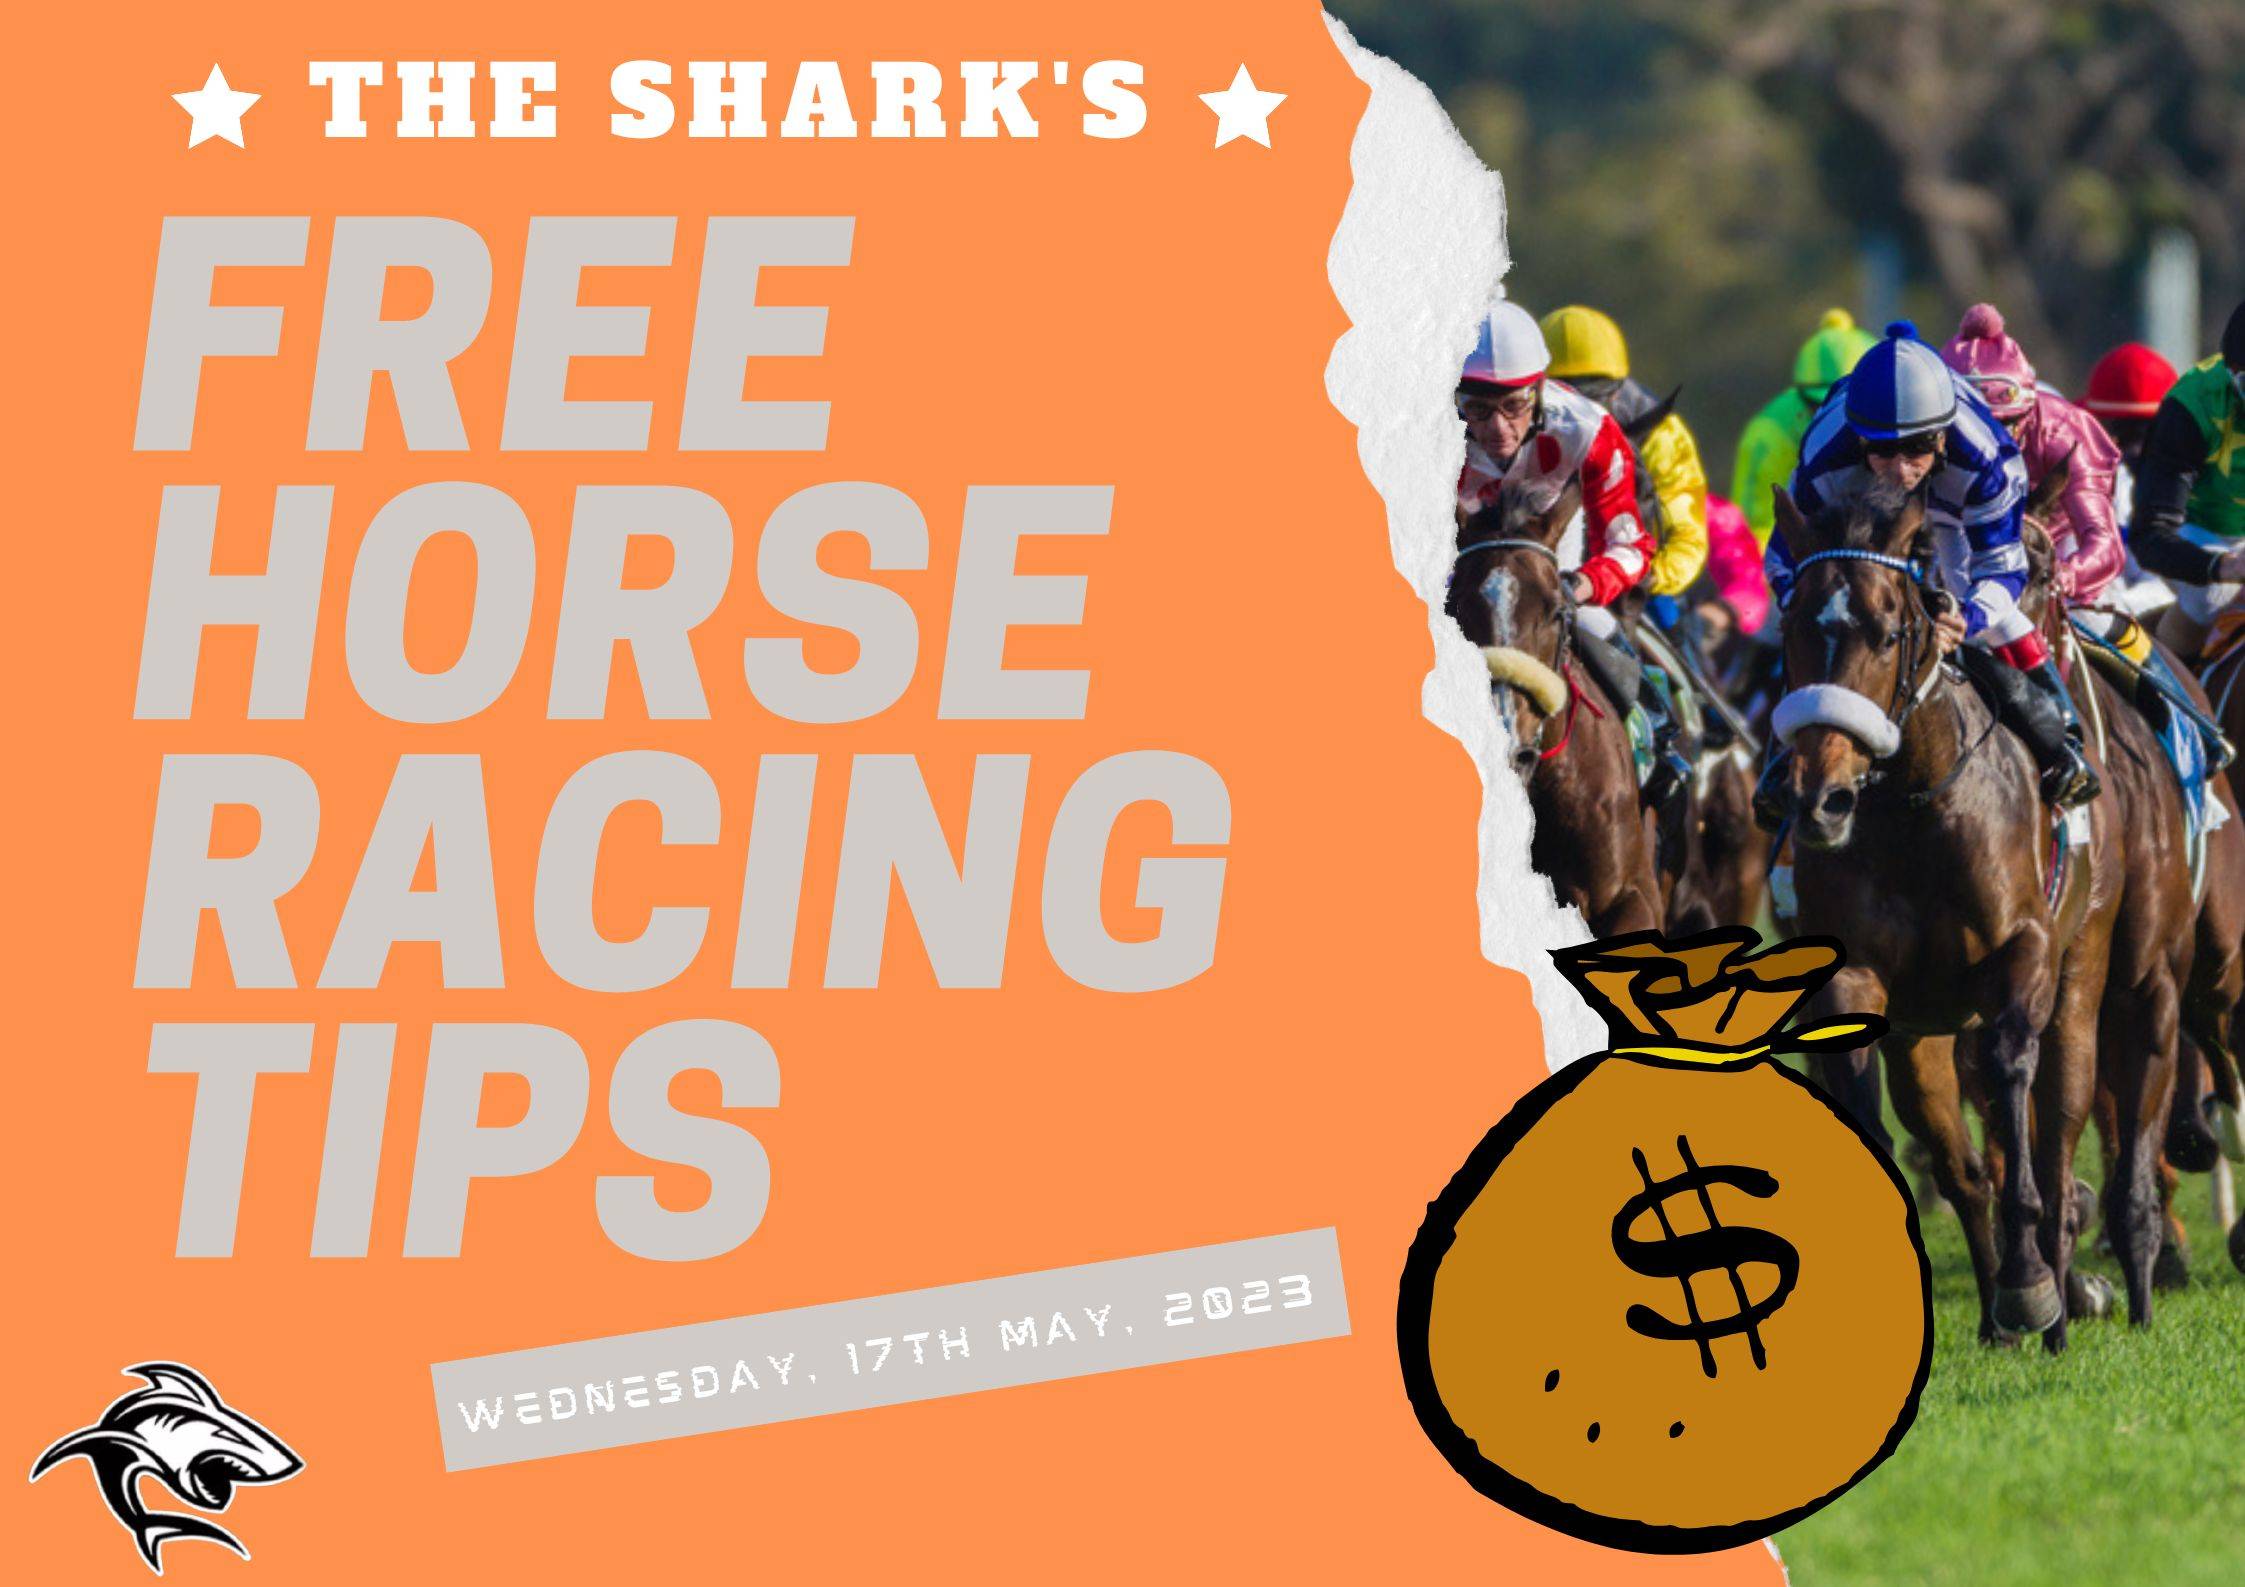 Free Horse Racing Tips - 17th May